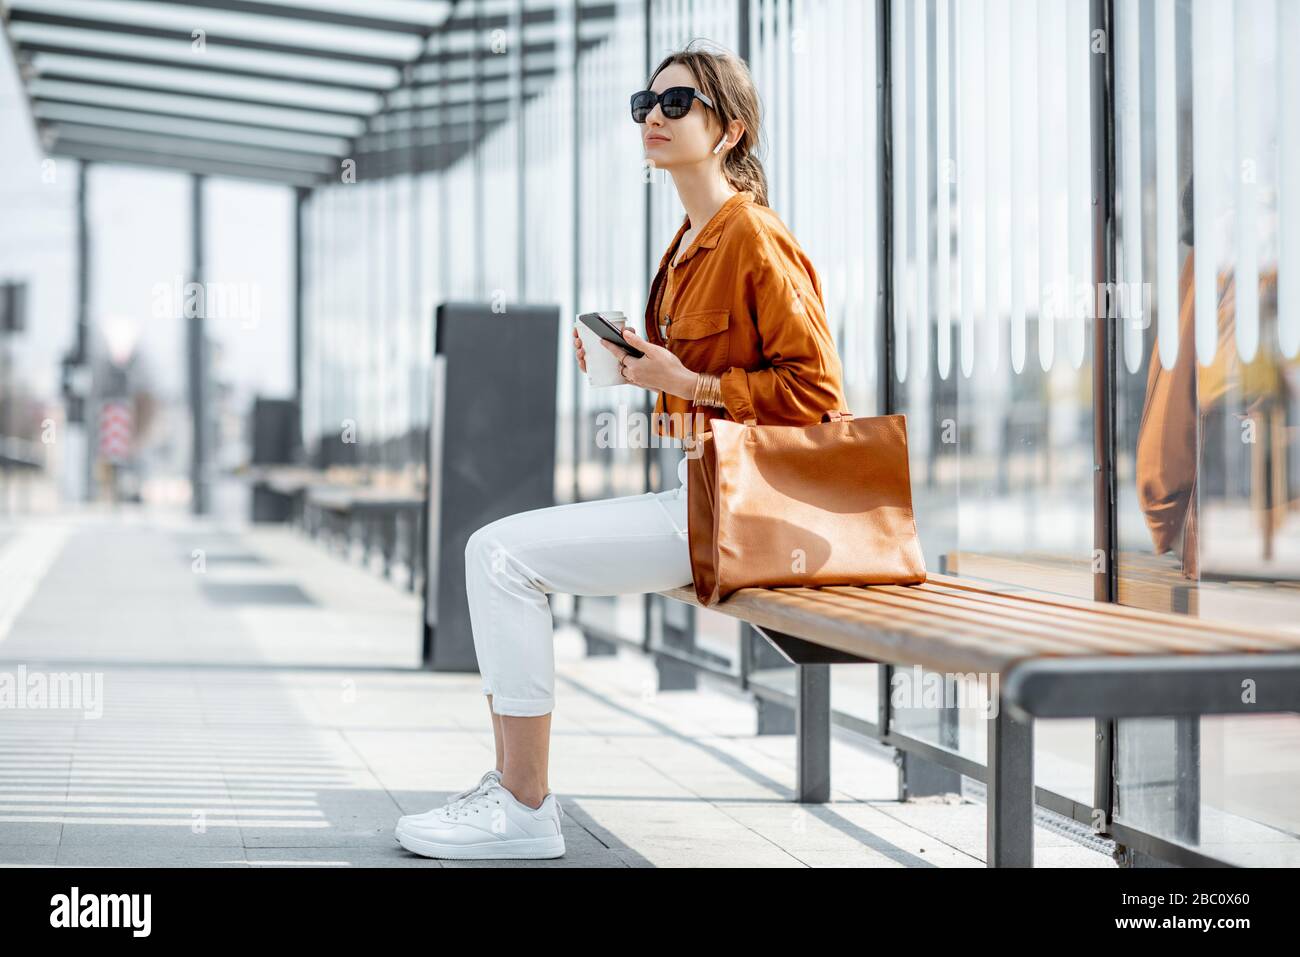 Junge, stilvolle Frau, die auf die öffentlichen Verkehrsmittel wartet und mit Telefon und Kaffee an der Haltestelle draußen sitzt. Städtisches Geschäftsreise-Konzept Stockfoto